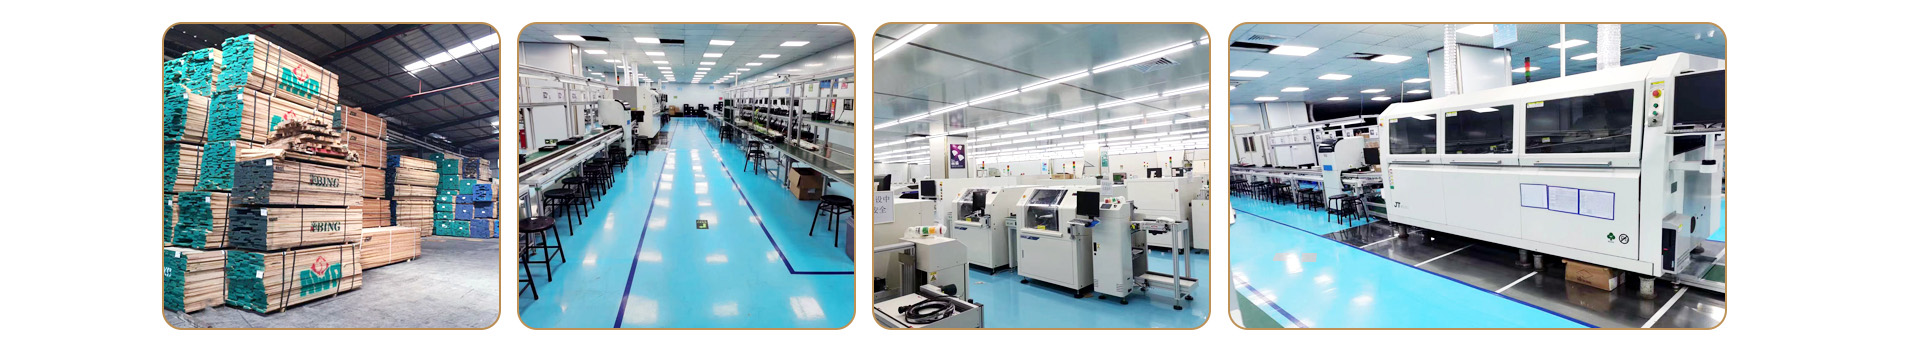 Dongguan Tengyao Electronic Technology Co., Ltd.